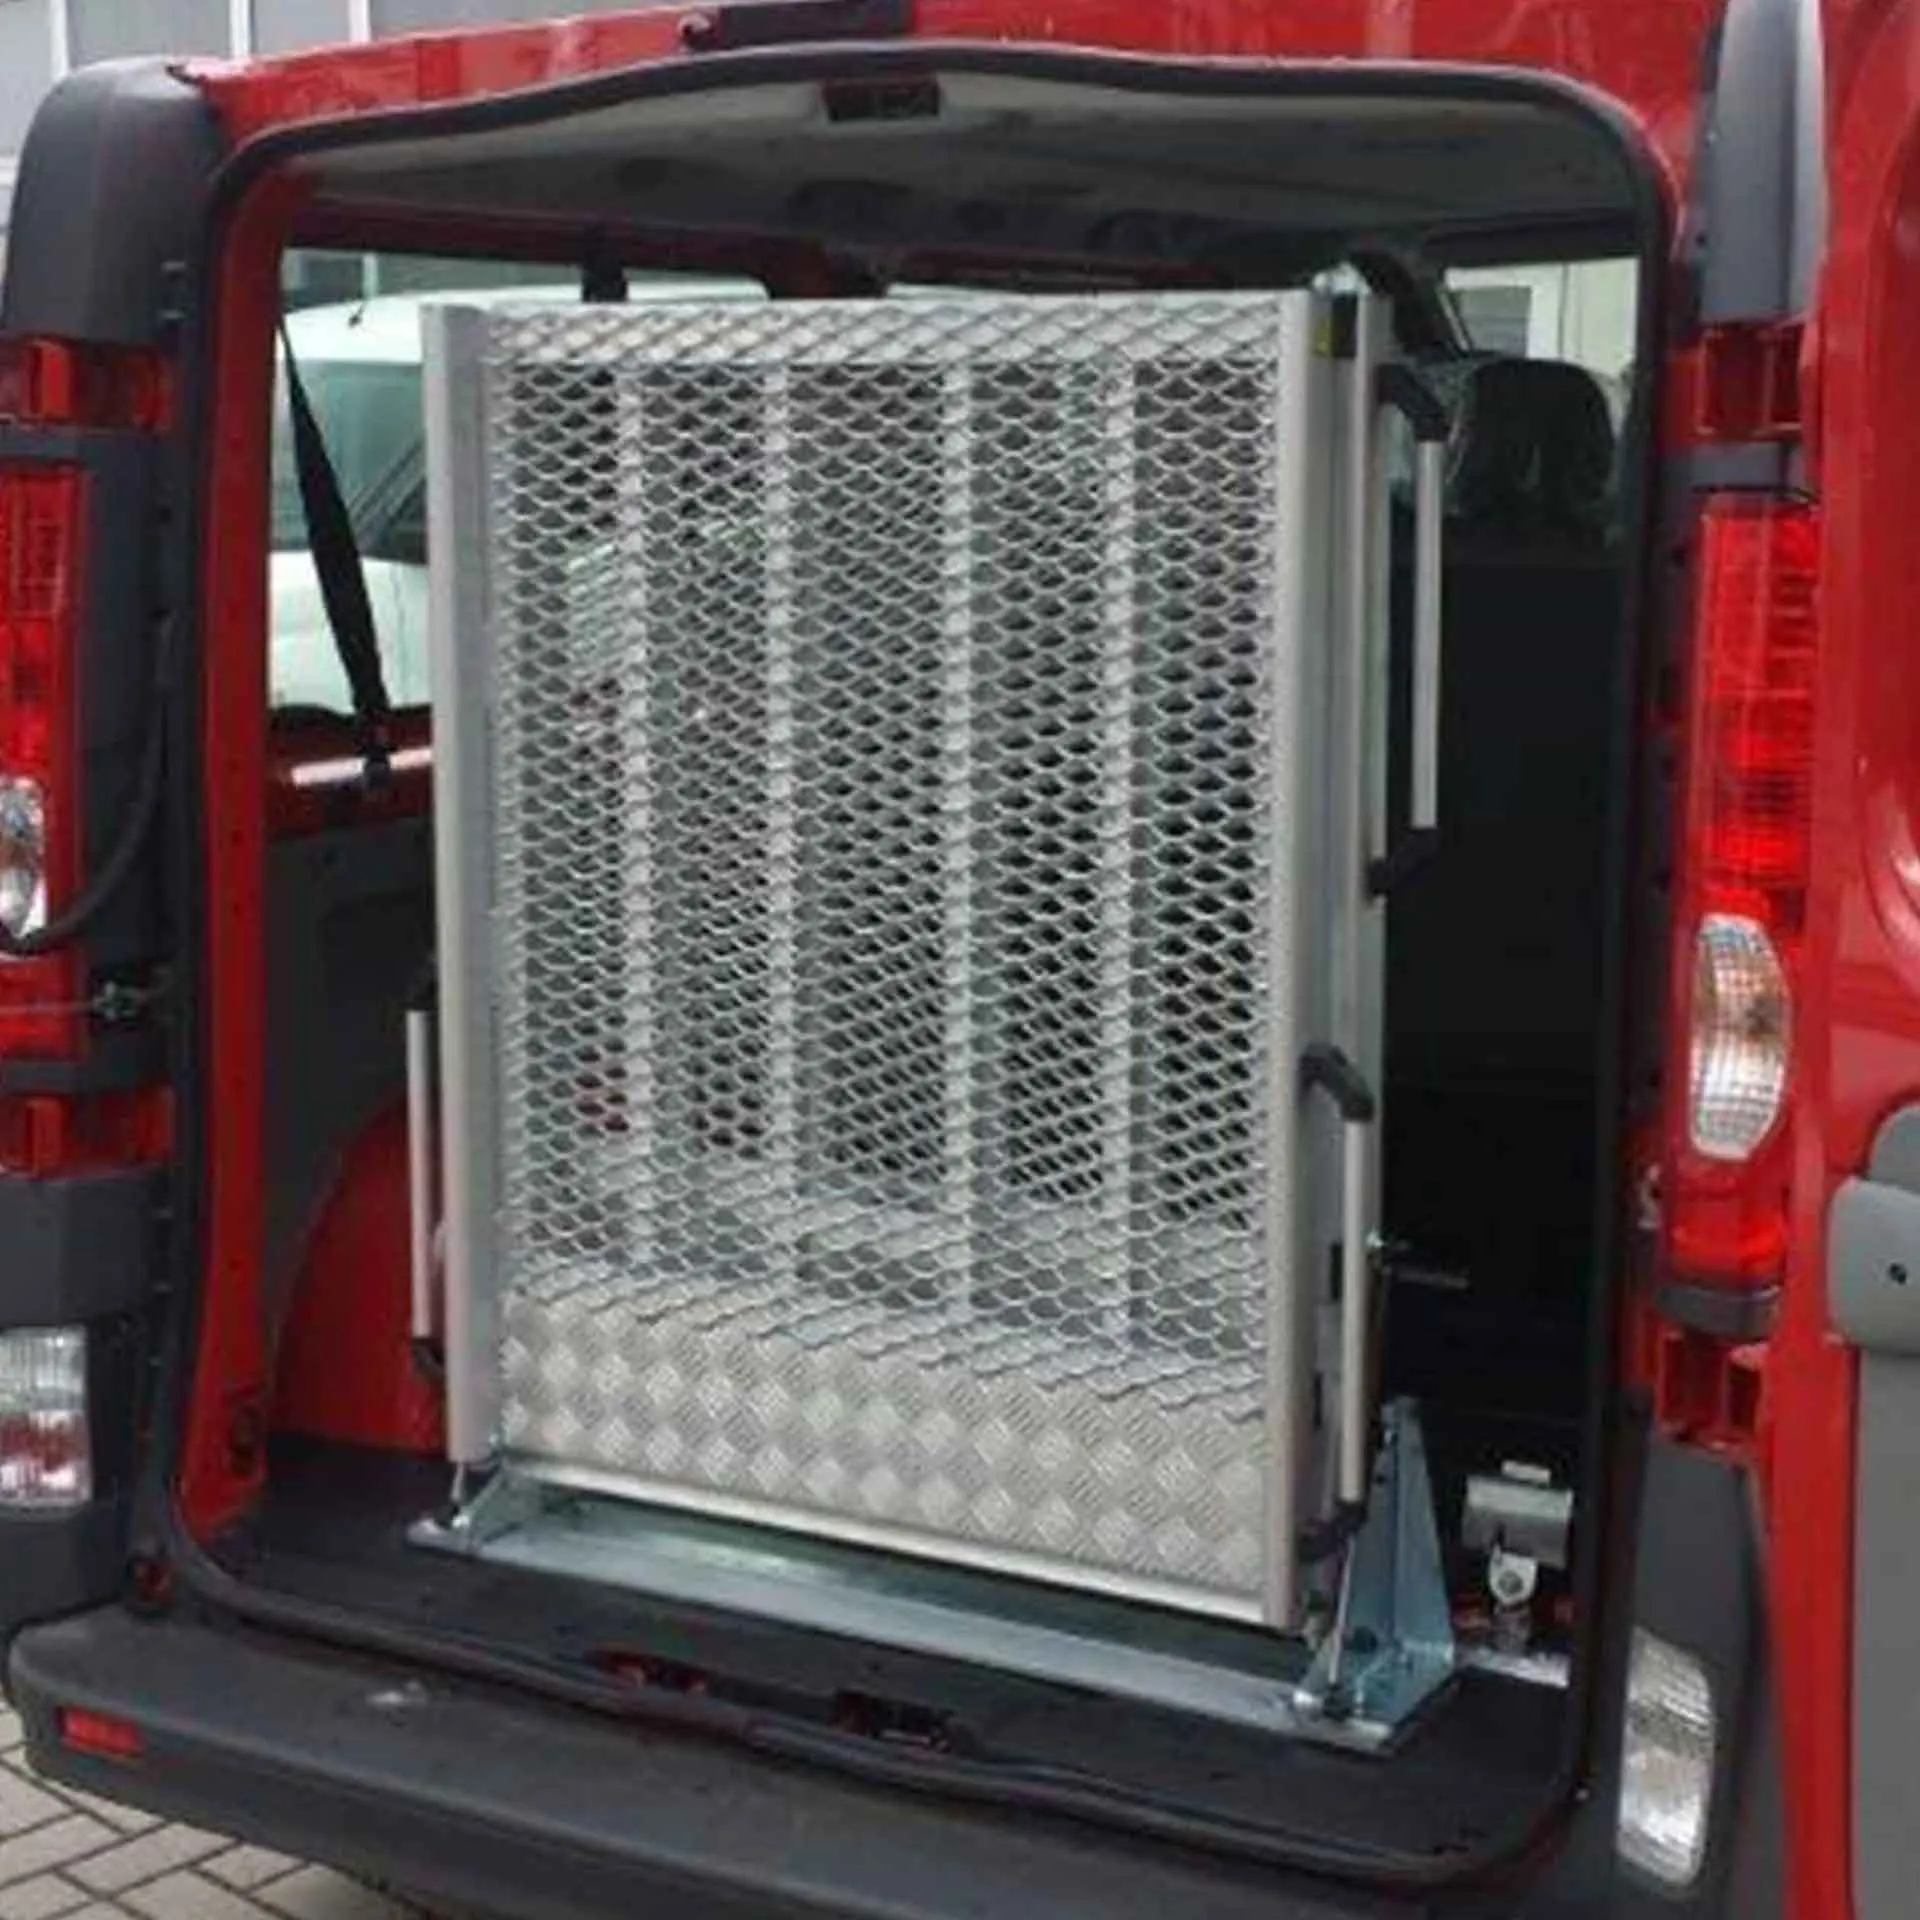 Serie EASY | Fest montierte Rollstuhlrampe für Kleinbusse - Abmessung 1.700 x 870 mm, mittig klappbar